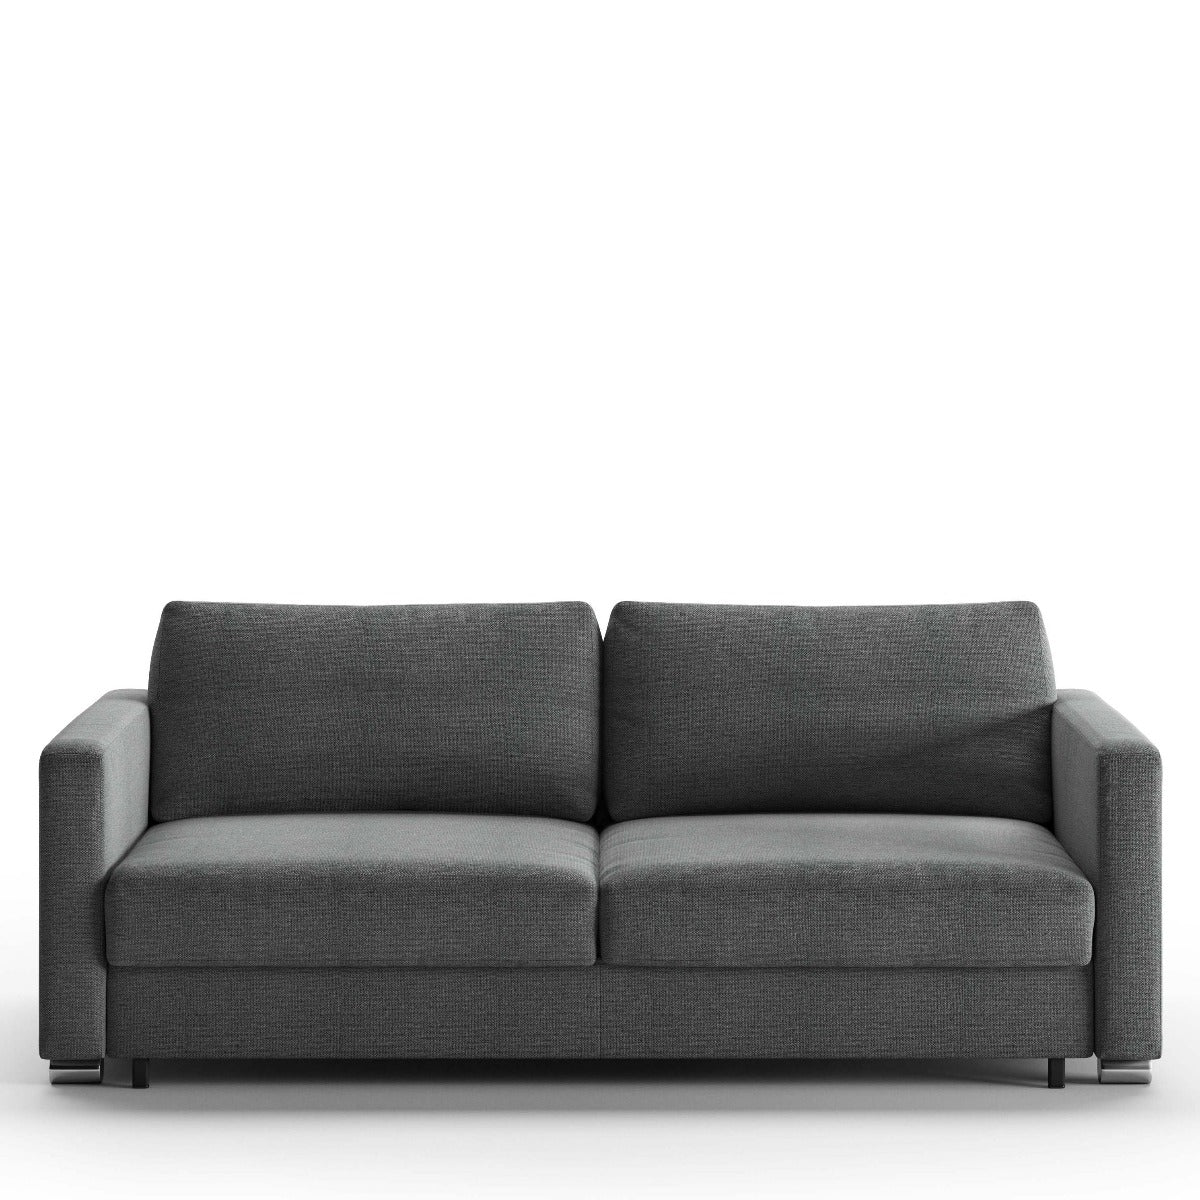 Luonto Furniture Fantasy King Sofa Sleeper - Fun 481 - 217/6 Chrome